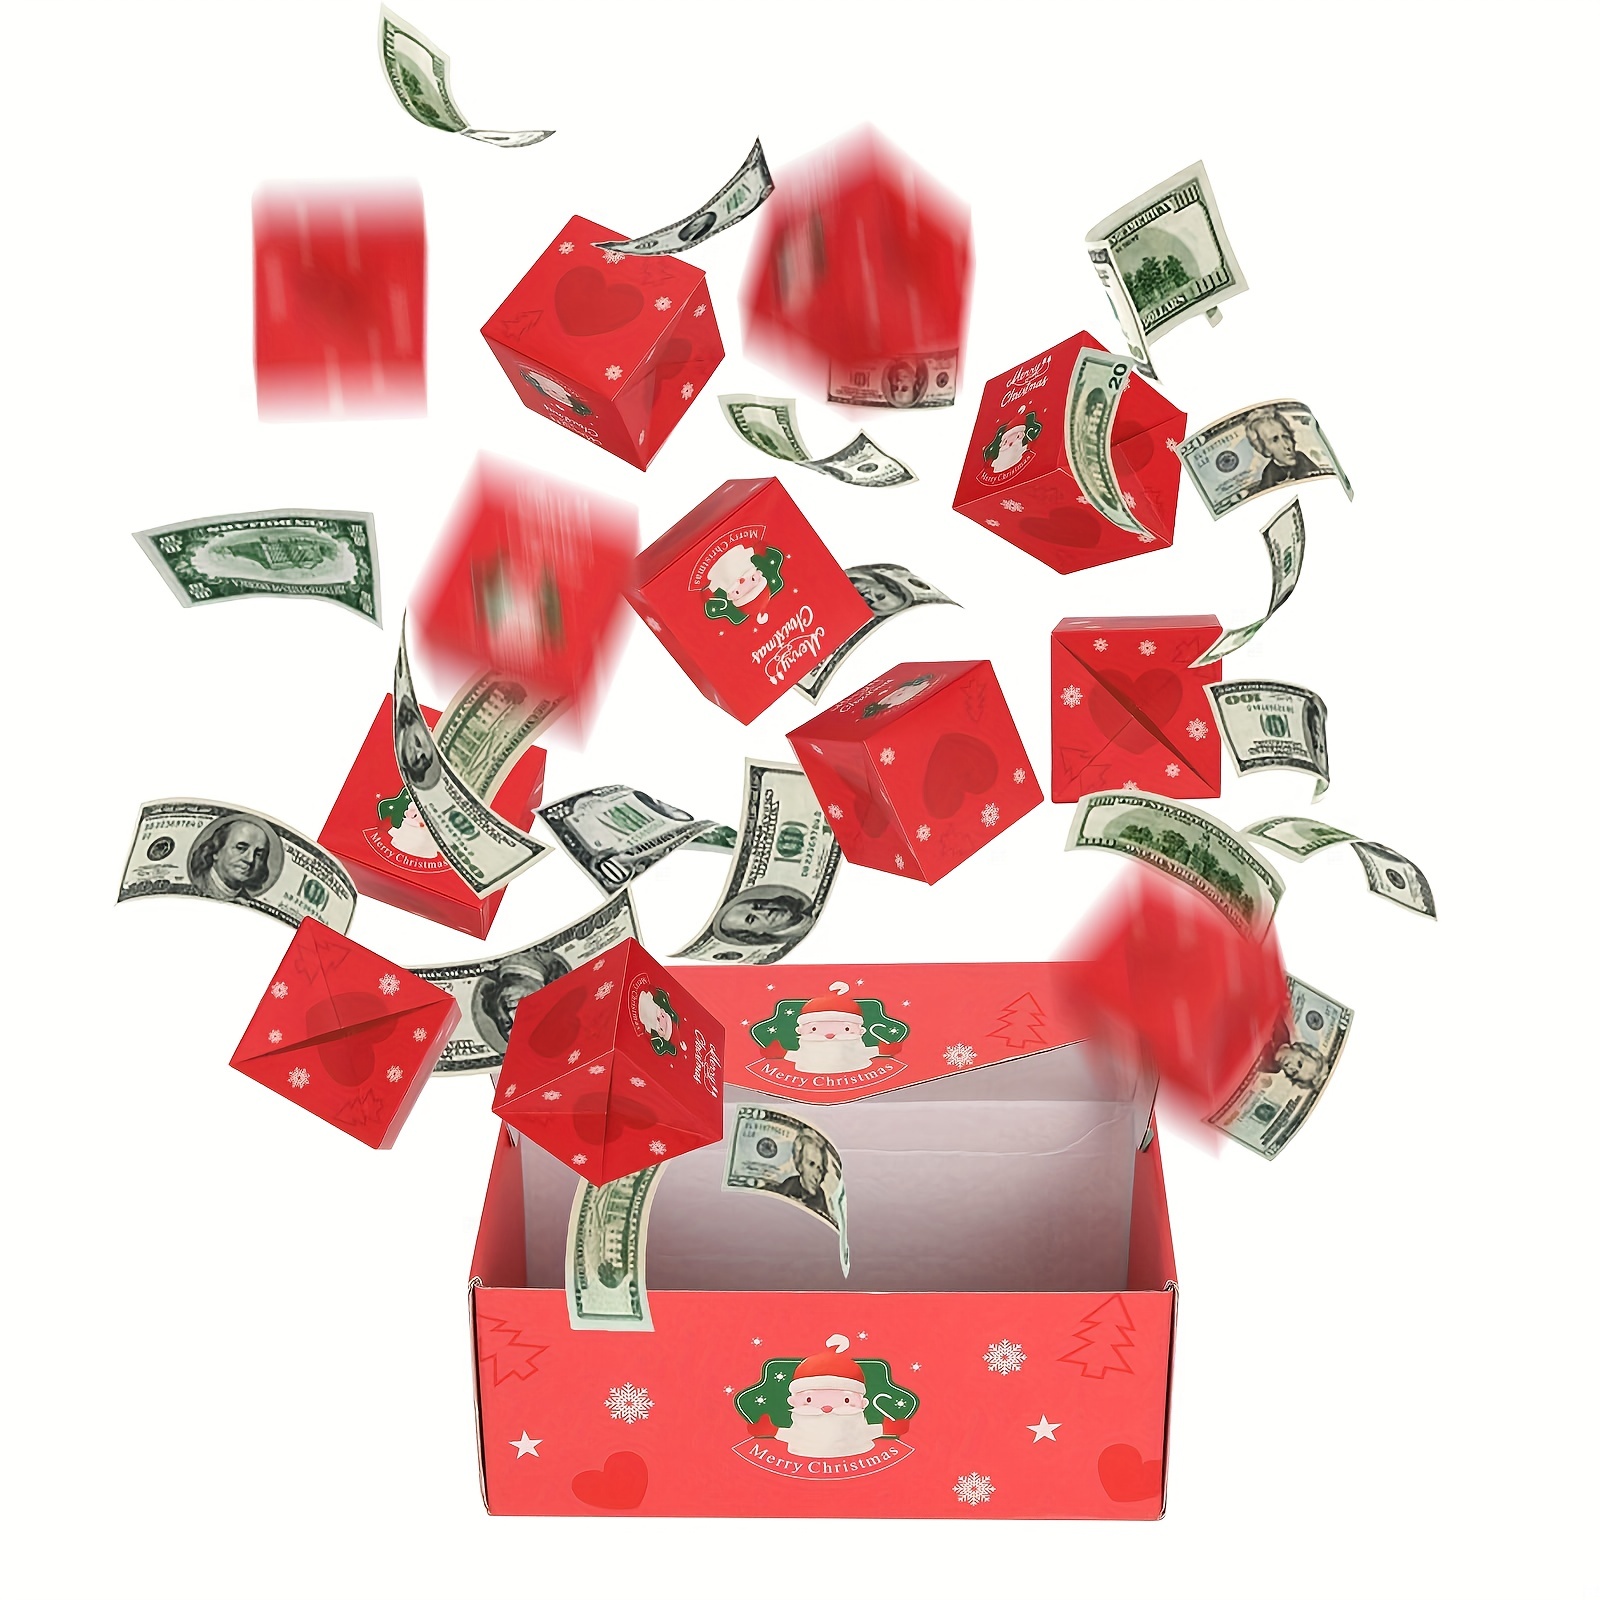  Caja de Navidad sorpresa, juego único de cajas de regalo rojas,  caja de regalo sorpresa explosionn bonita caja creativa explosiva cajas de  rebote para regalo de Navidad, vacaciones, cumpleaños, Acción de